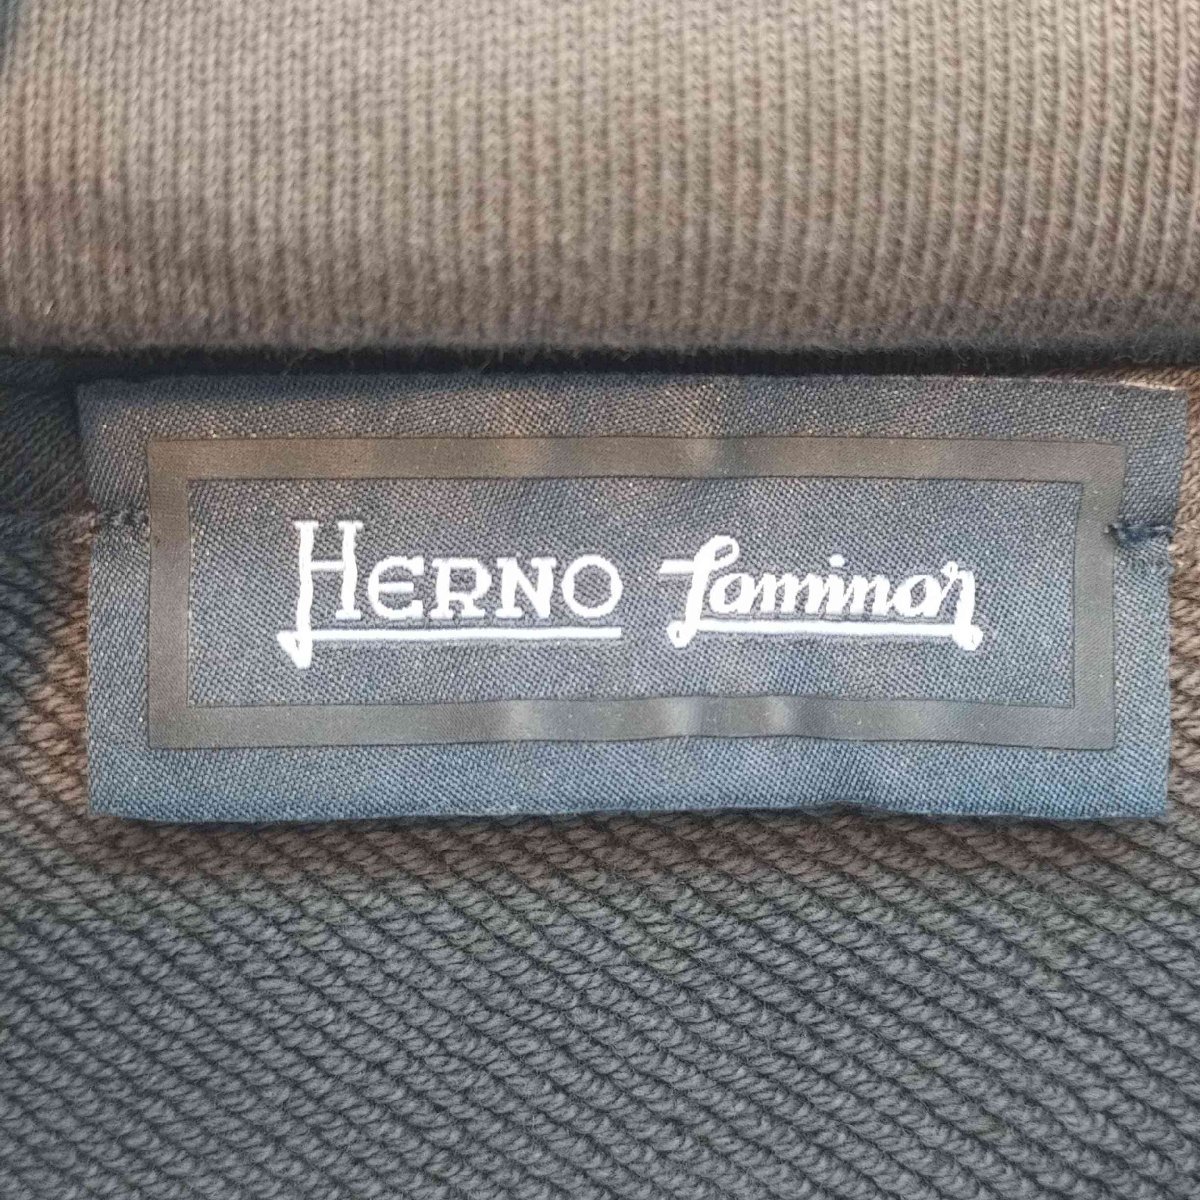 Herno(ヘルノ) Laminar ラミナー エンボス ロゴ スウェット プルオーバーパーカ メンズ 中古 古着 0605_画像6